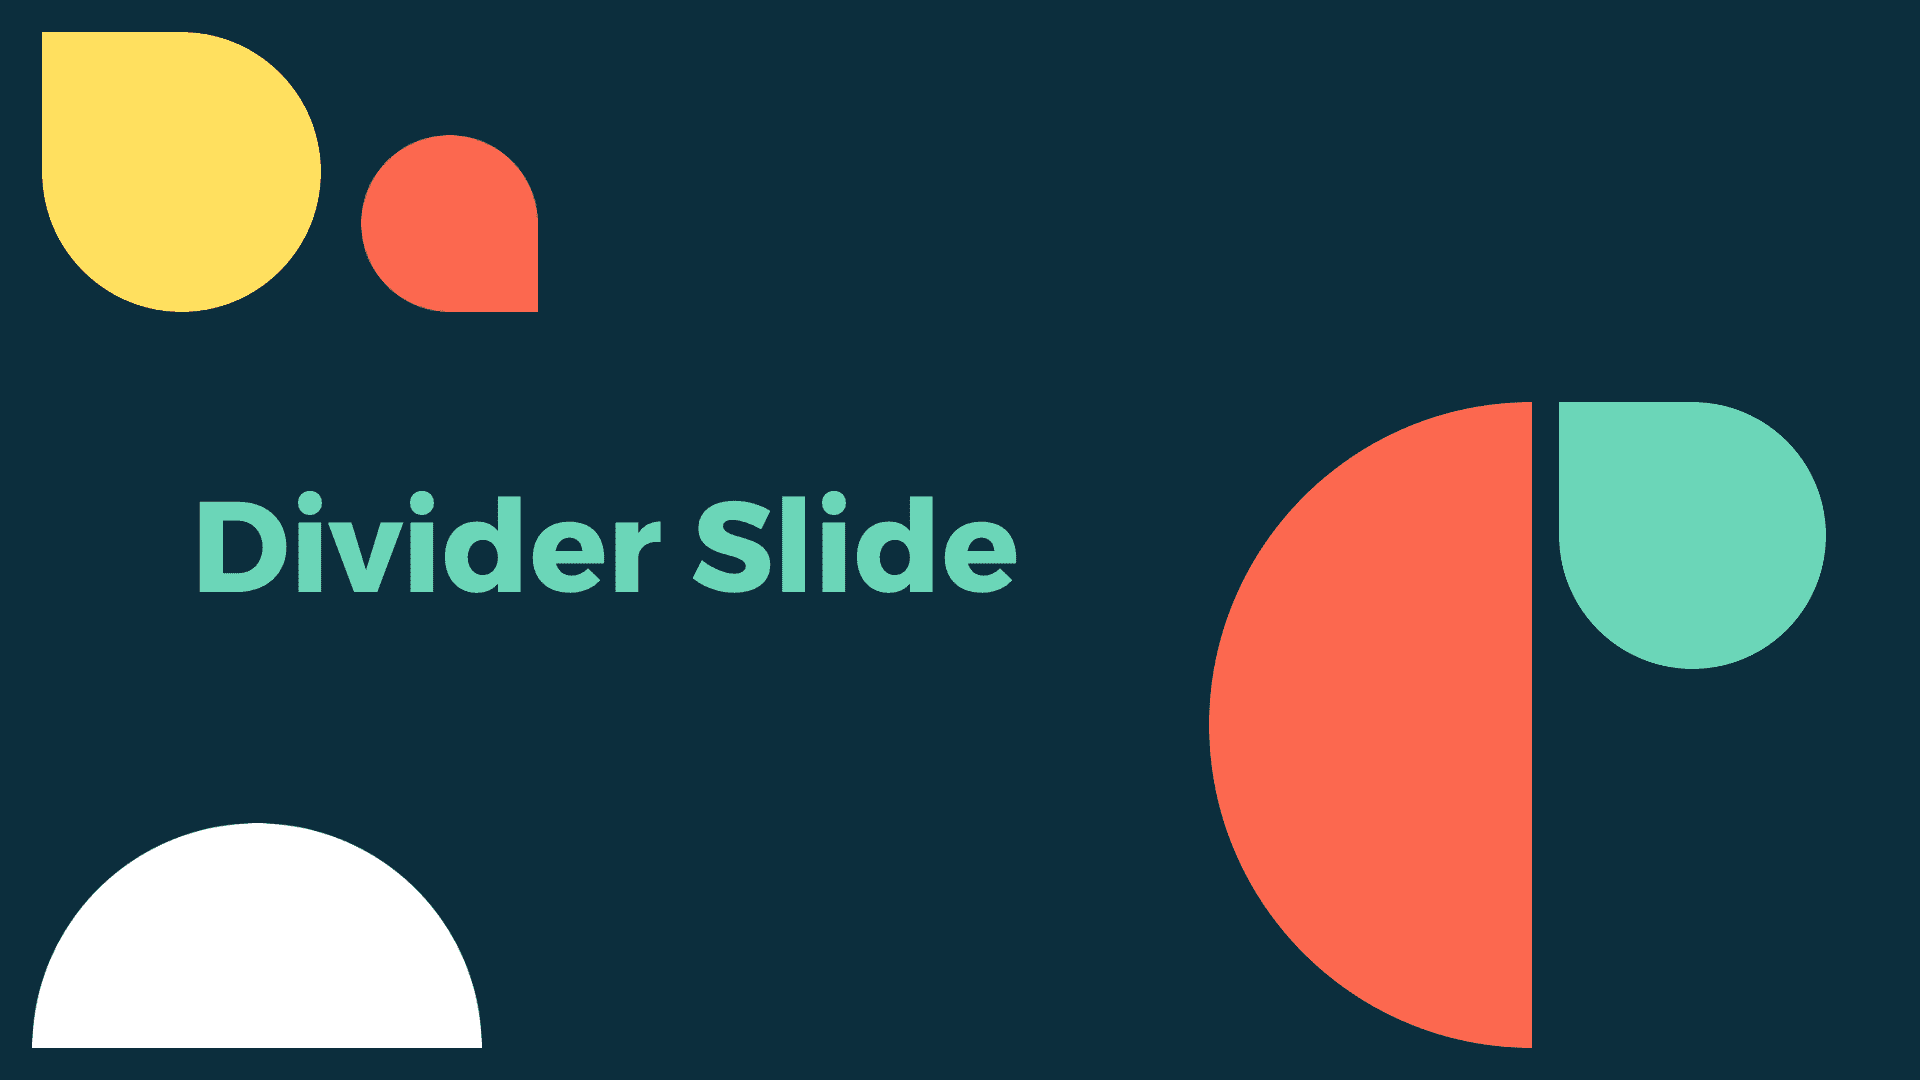 Seep presentation deck slide design